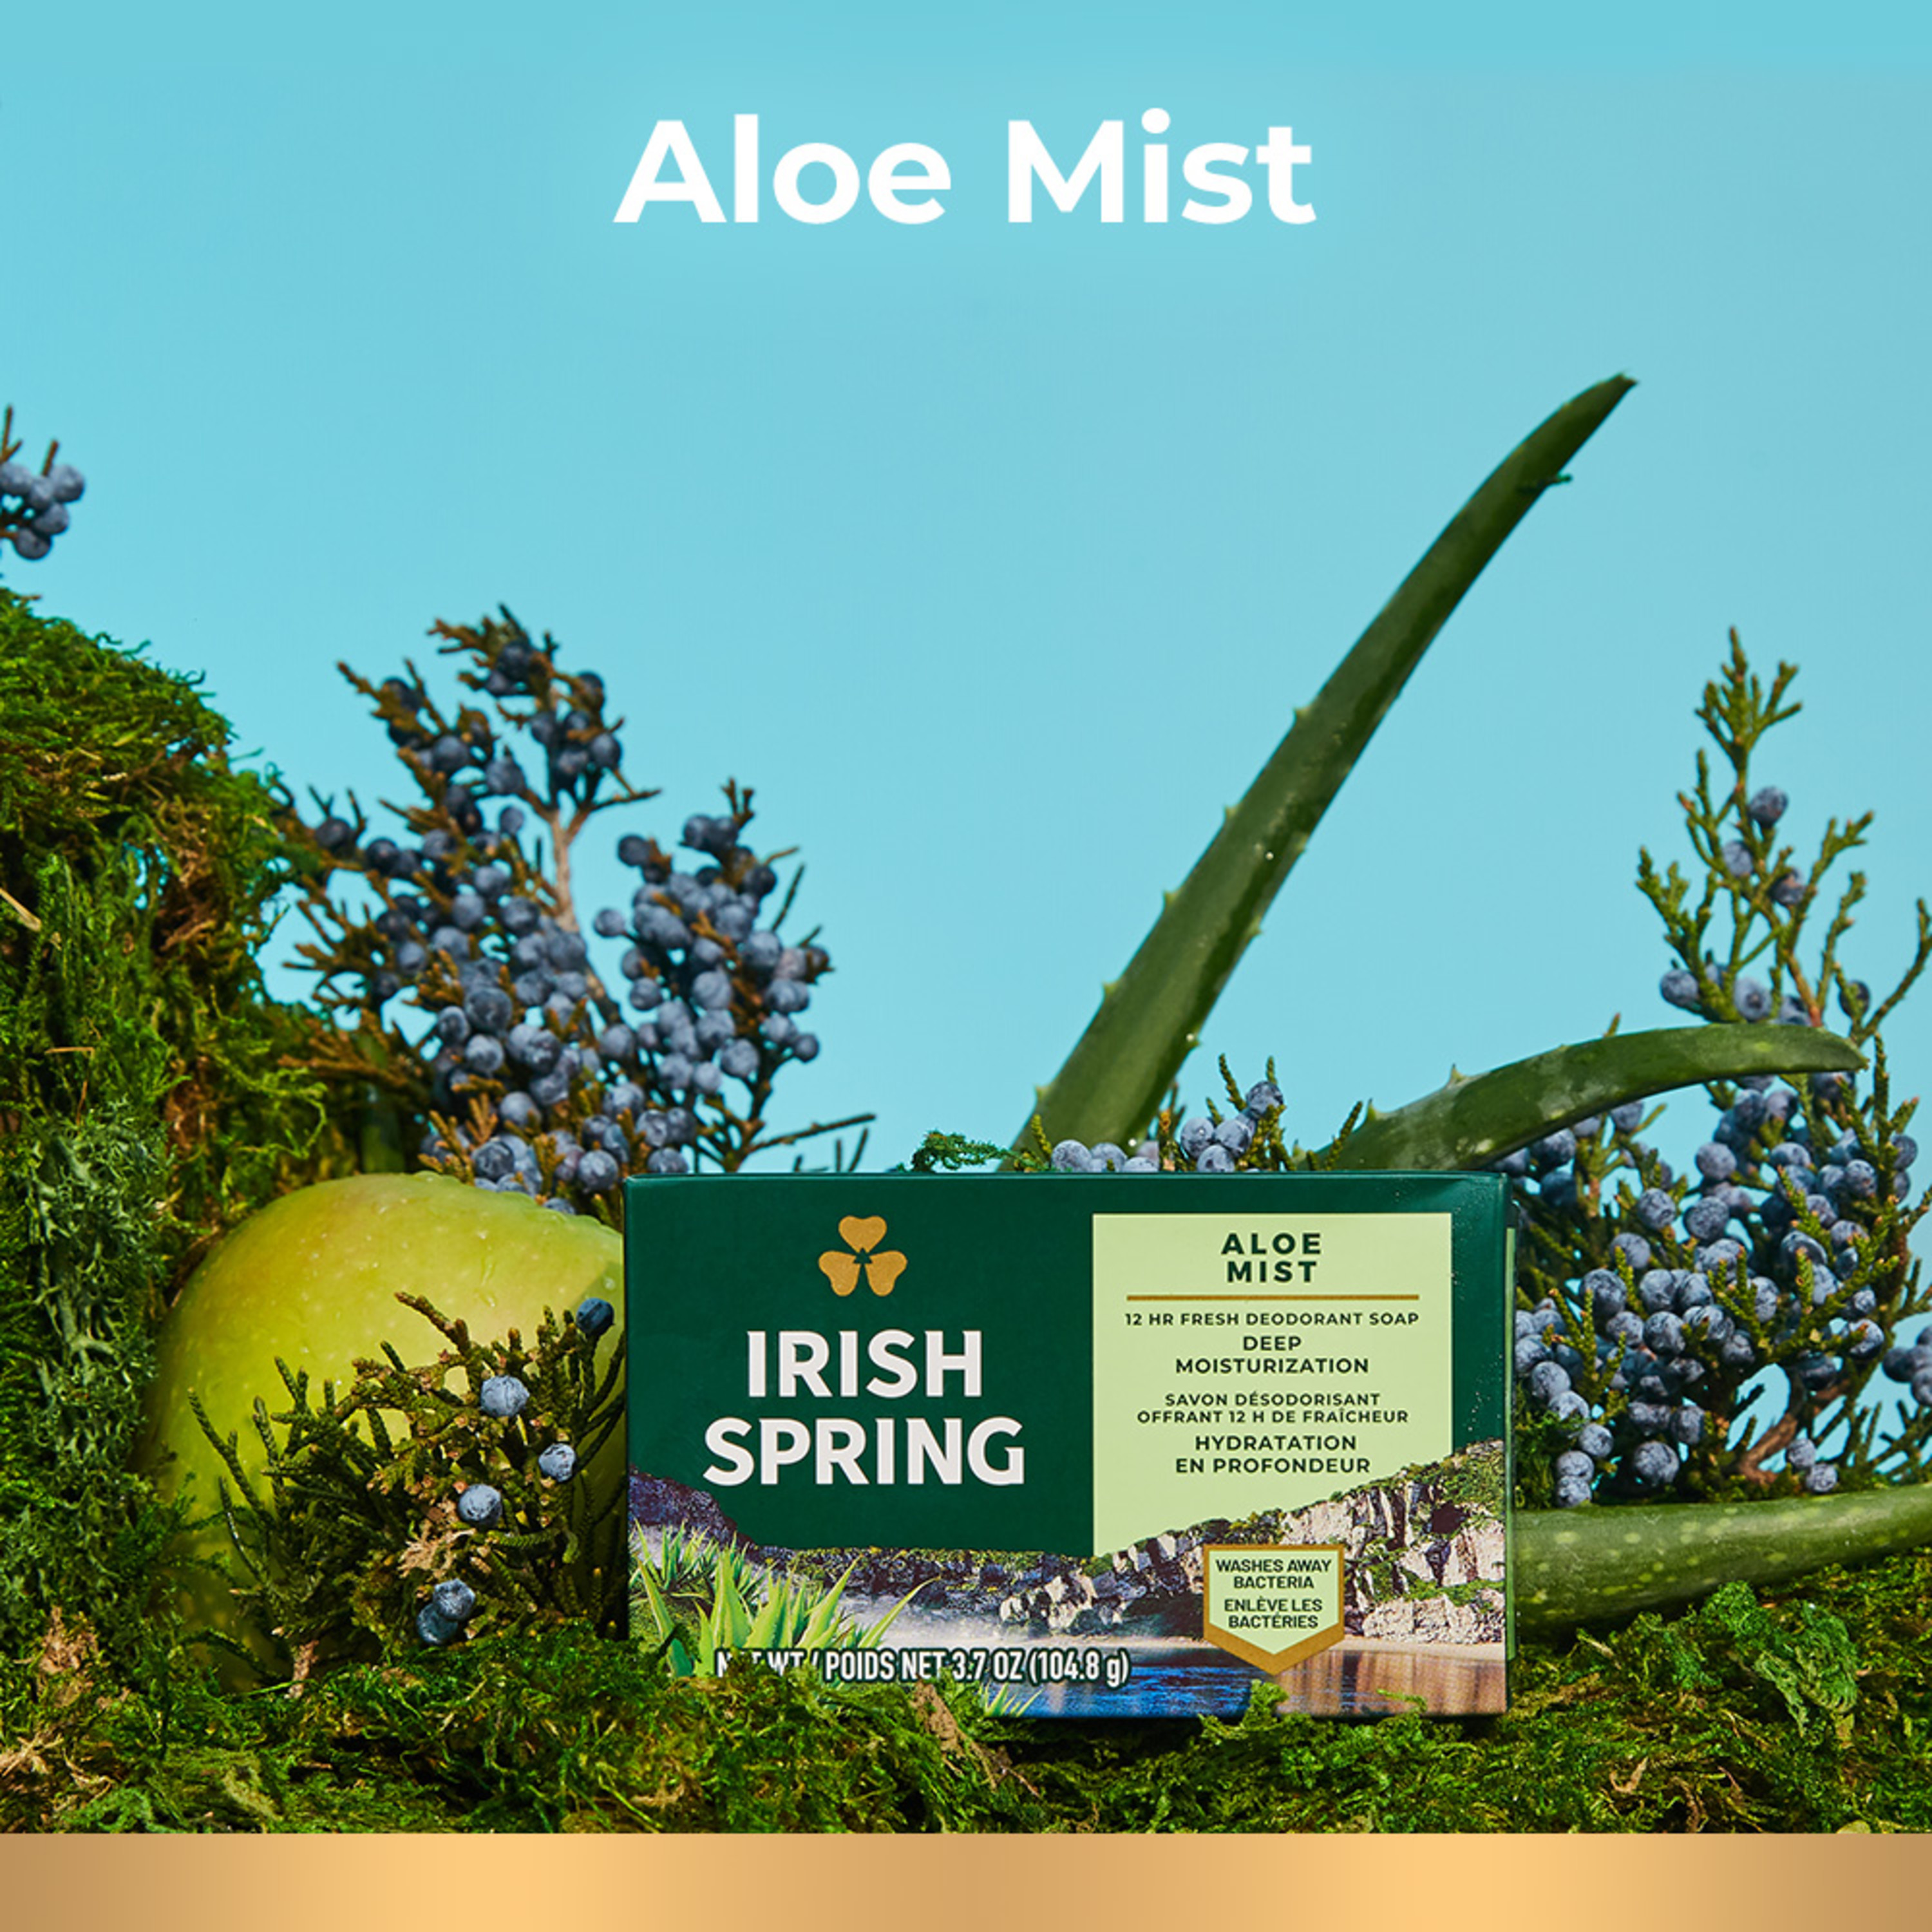 Irish Spring Aloe Mist Deodorant Bar Soap for Men, Feel Fresh All Day, 3.7 oz, 12 Pack - image 5 of 23